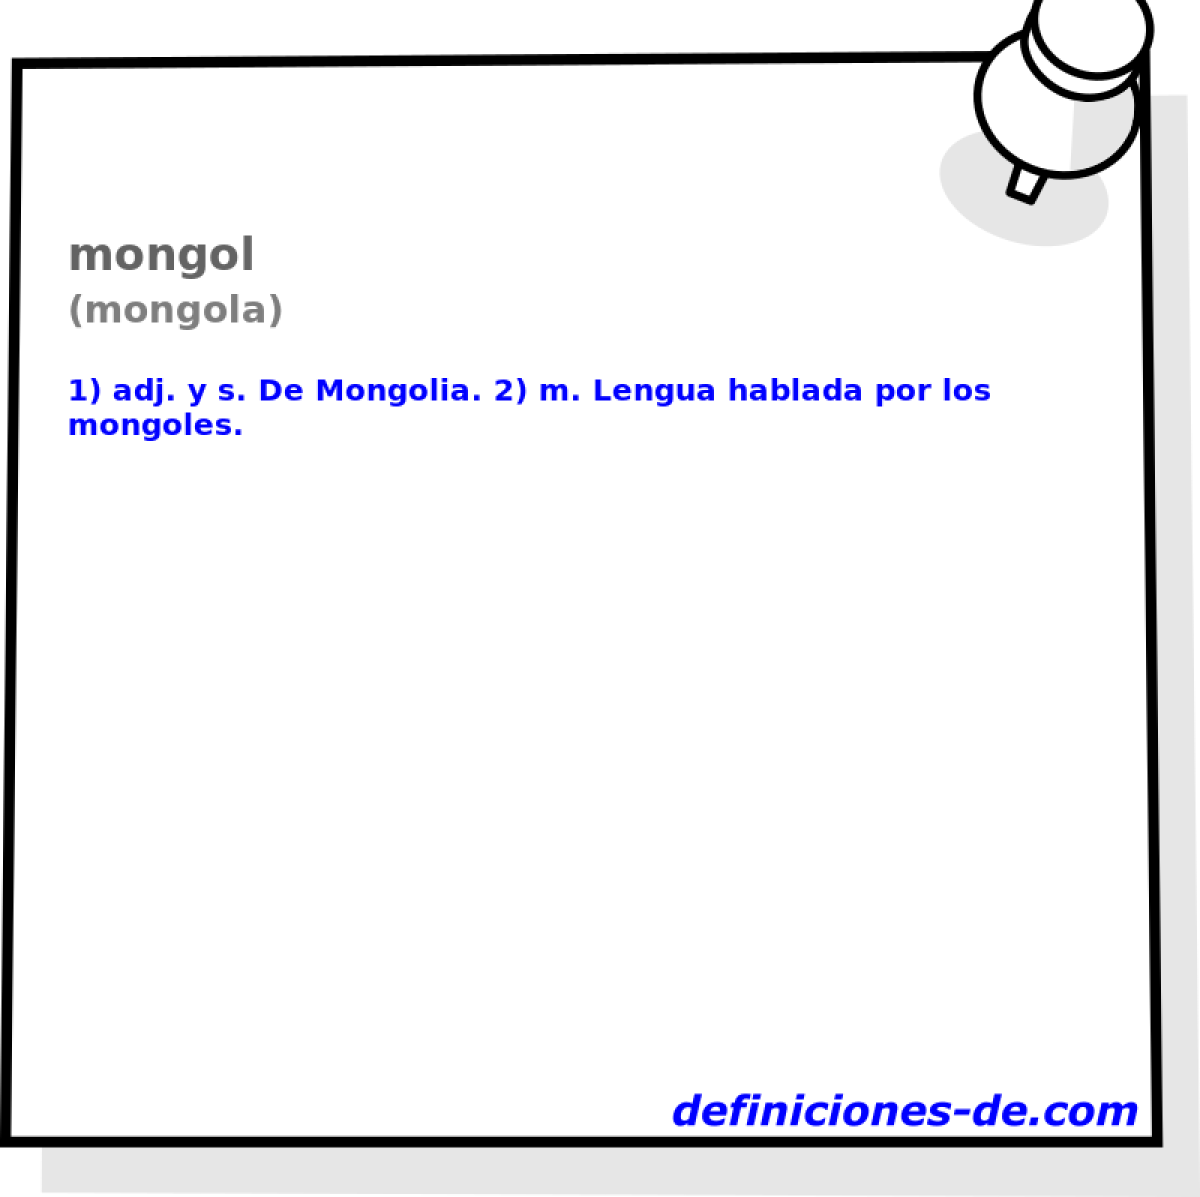 mongol (mongola)